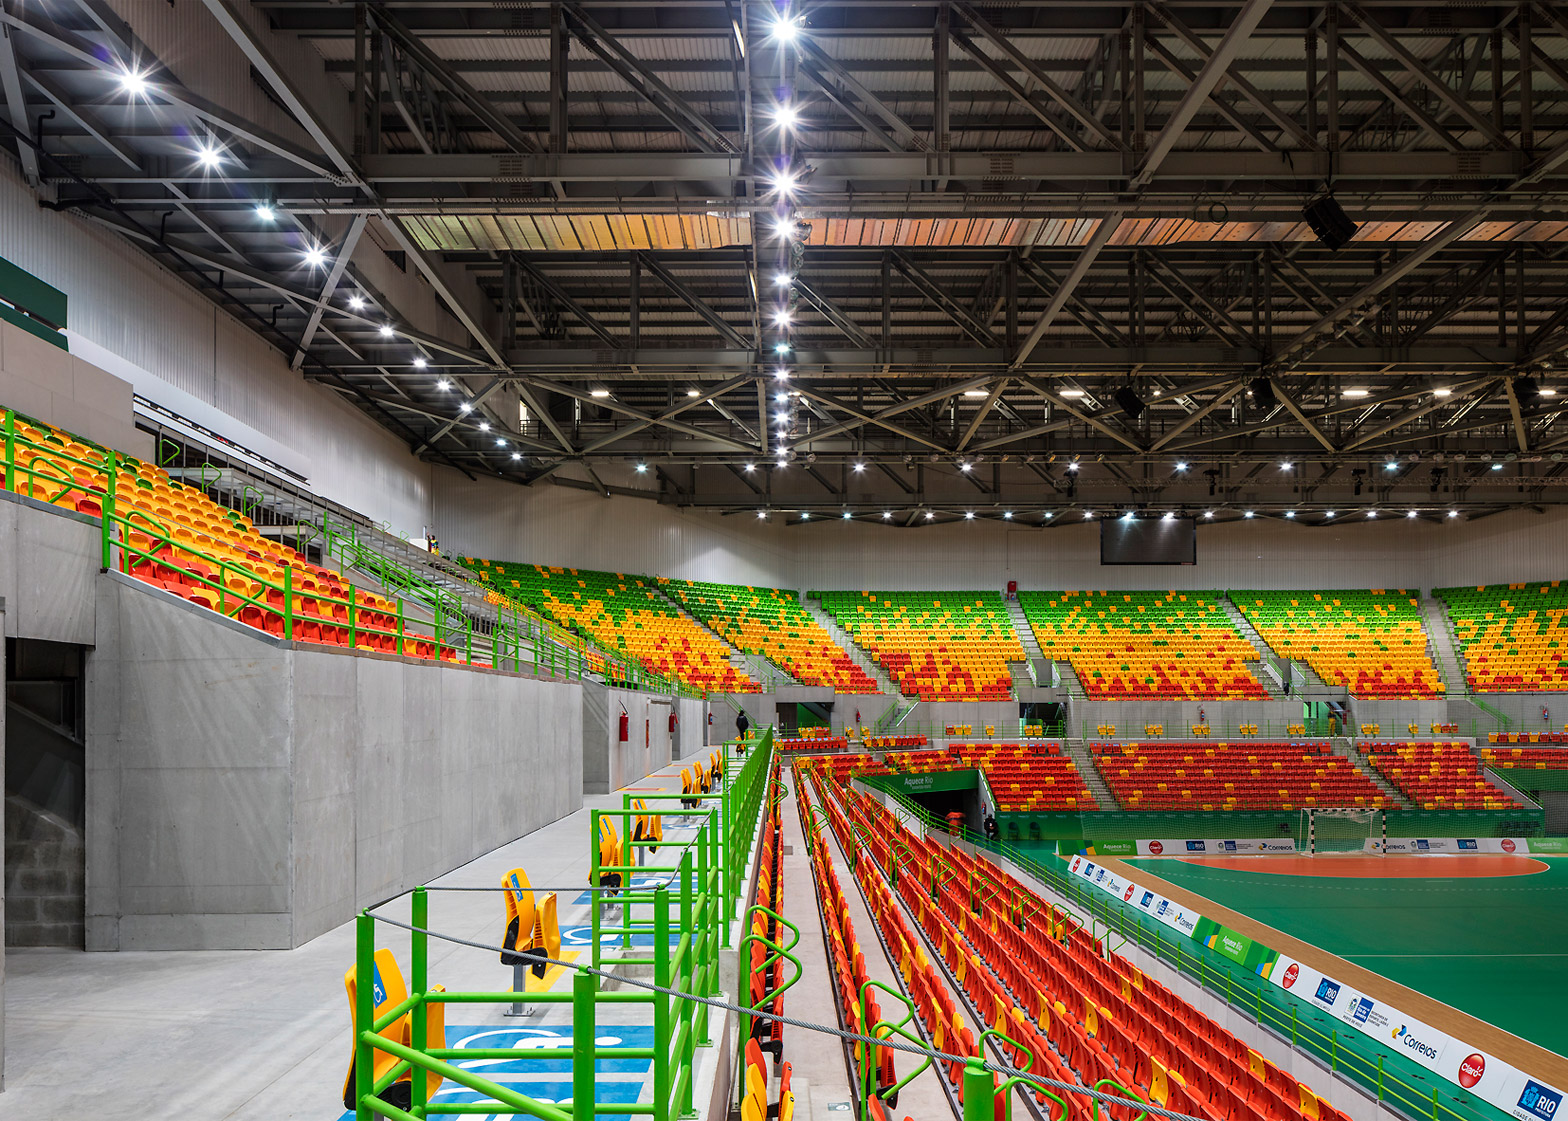 Future Arena Rio 2016 handball arena will dismantle to become four schools